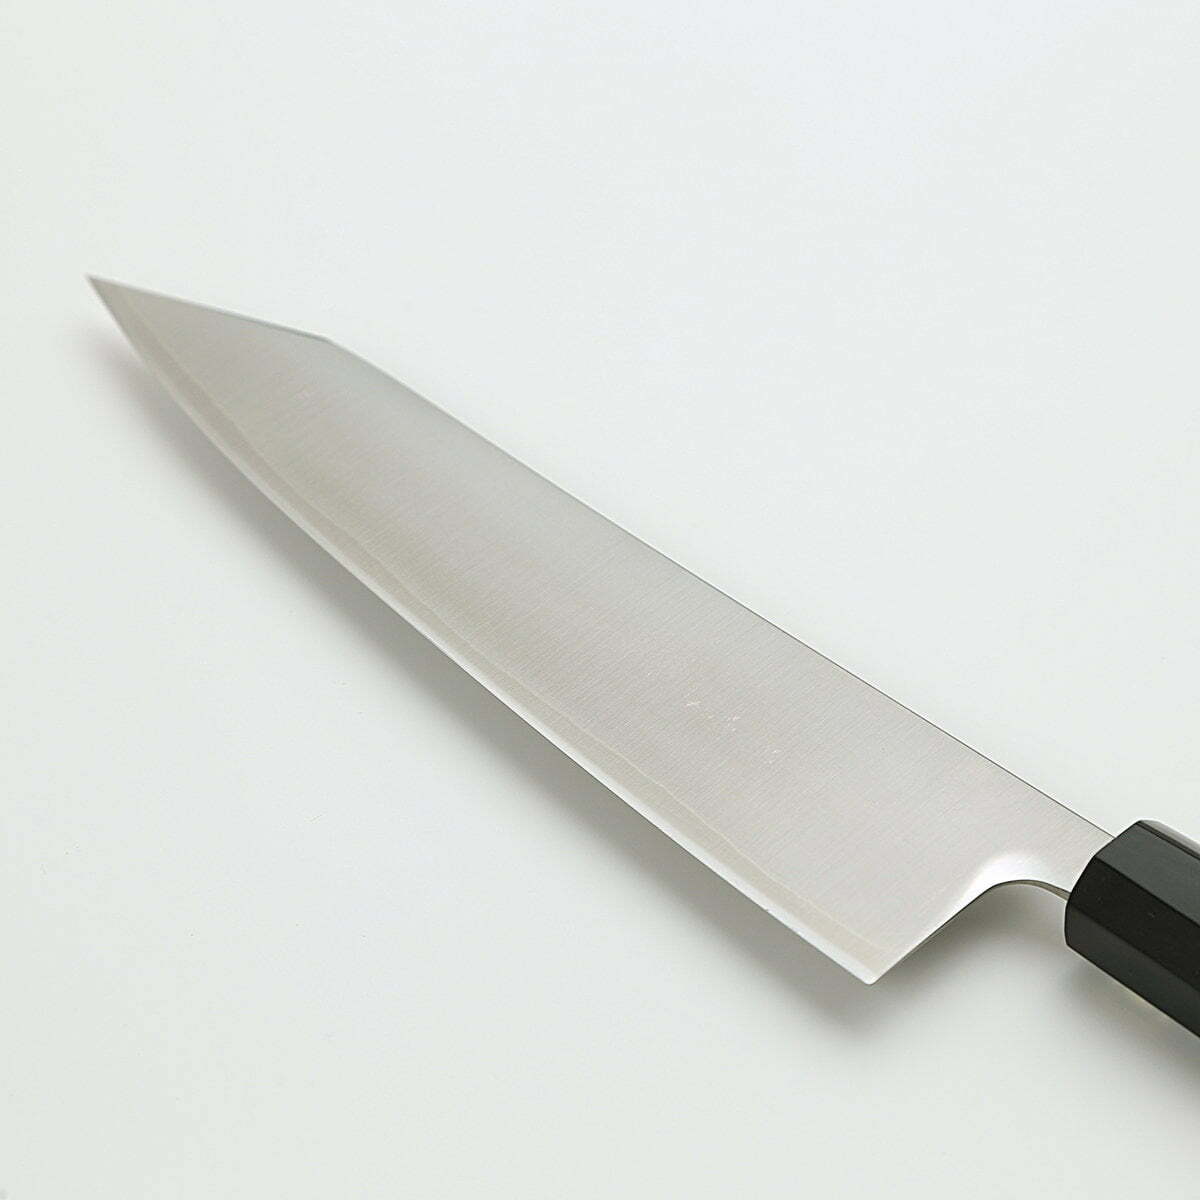 סכין שף רב-תכליתית קִּירִיצוּקֶה גִּיוּטוֹ 210מ״מ מחוזקת 3 שכבות: פלדת פחמן יפנית מתקדמת מסוג R2/SG2 עטופה פלדת אל-חלד גימור מבריק ג׳יקו סאקאיי יפן